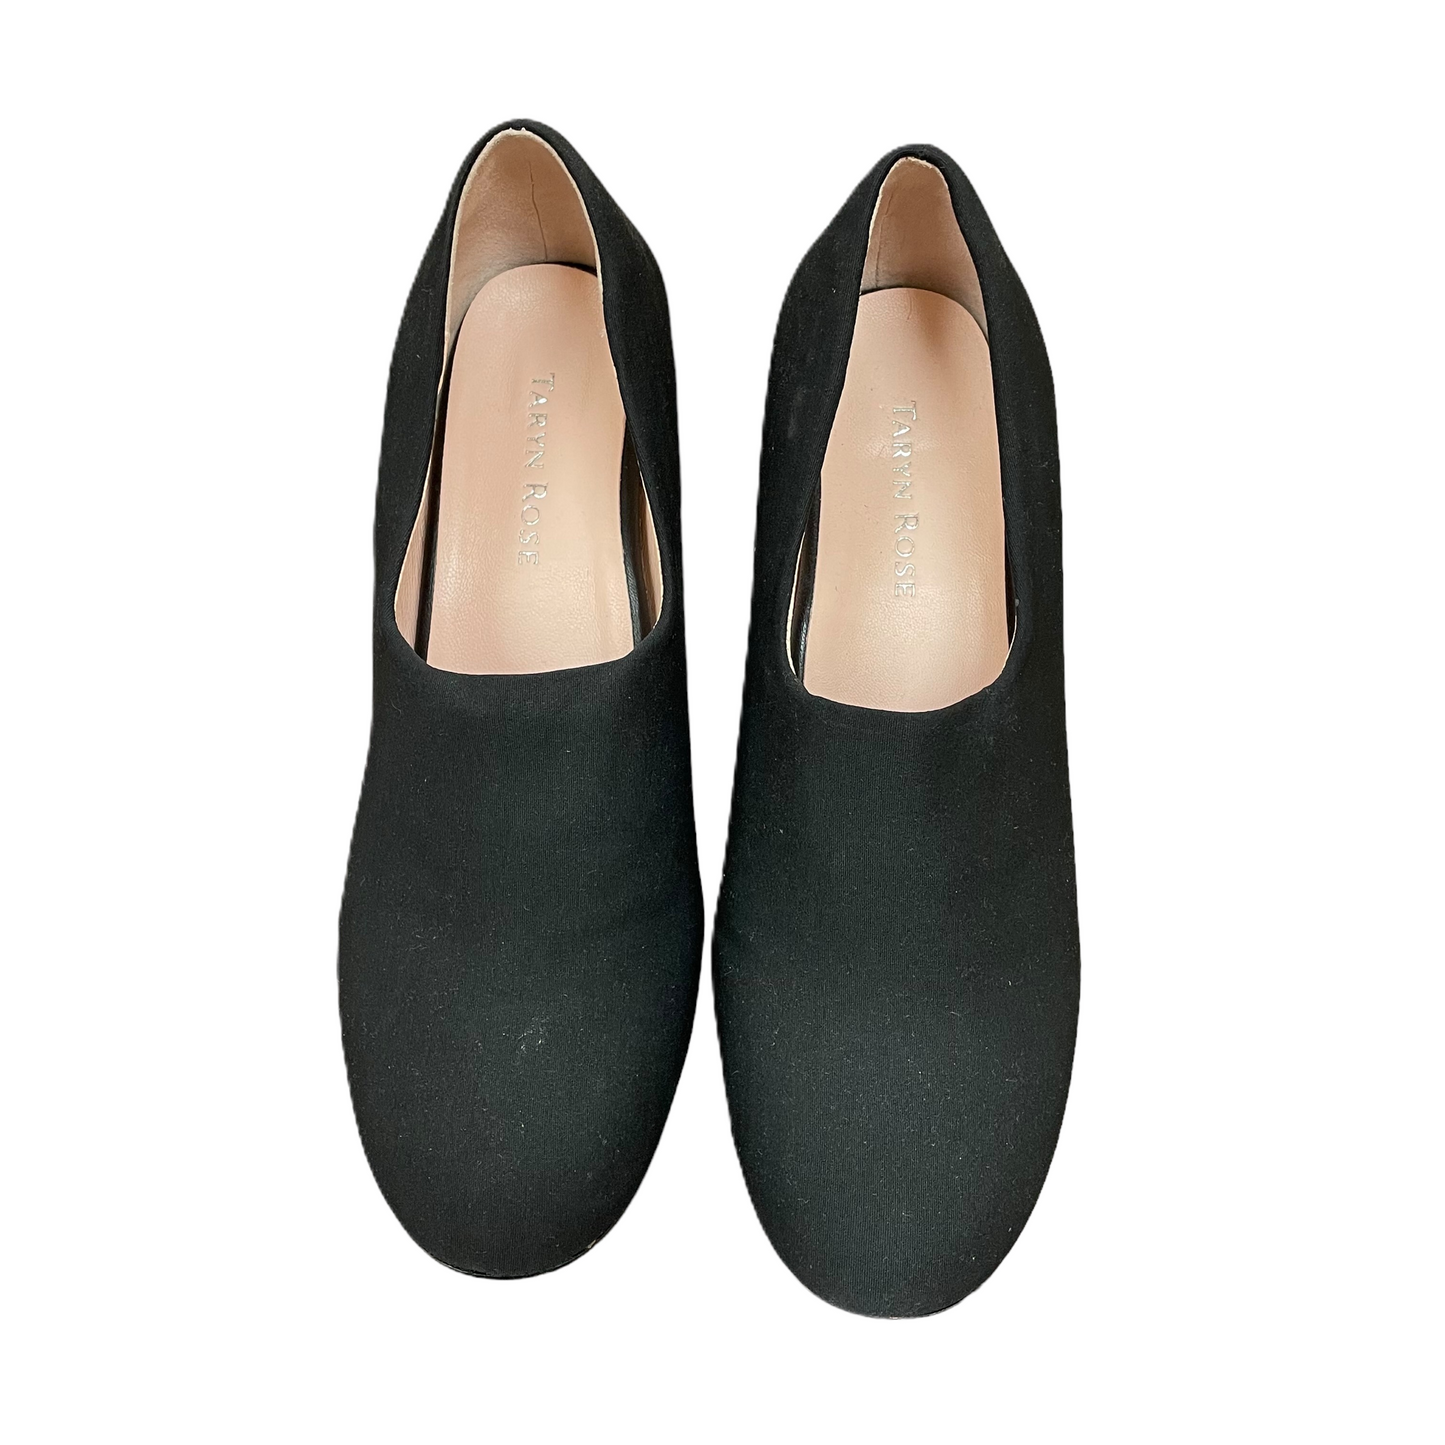 Black Shoes Heels Block By Taryn Rose,  Size: 8.5